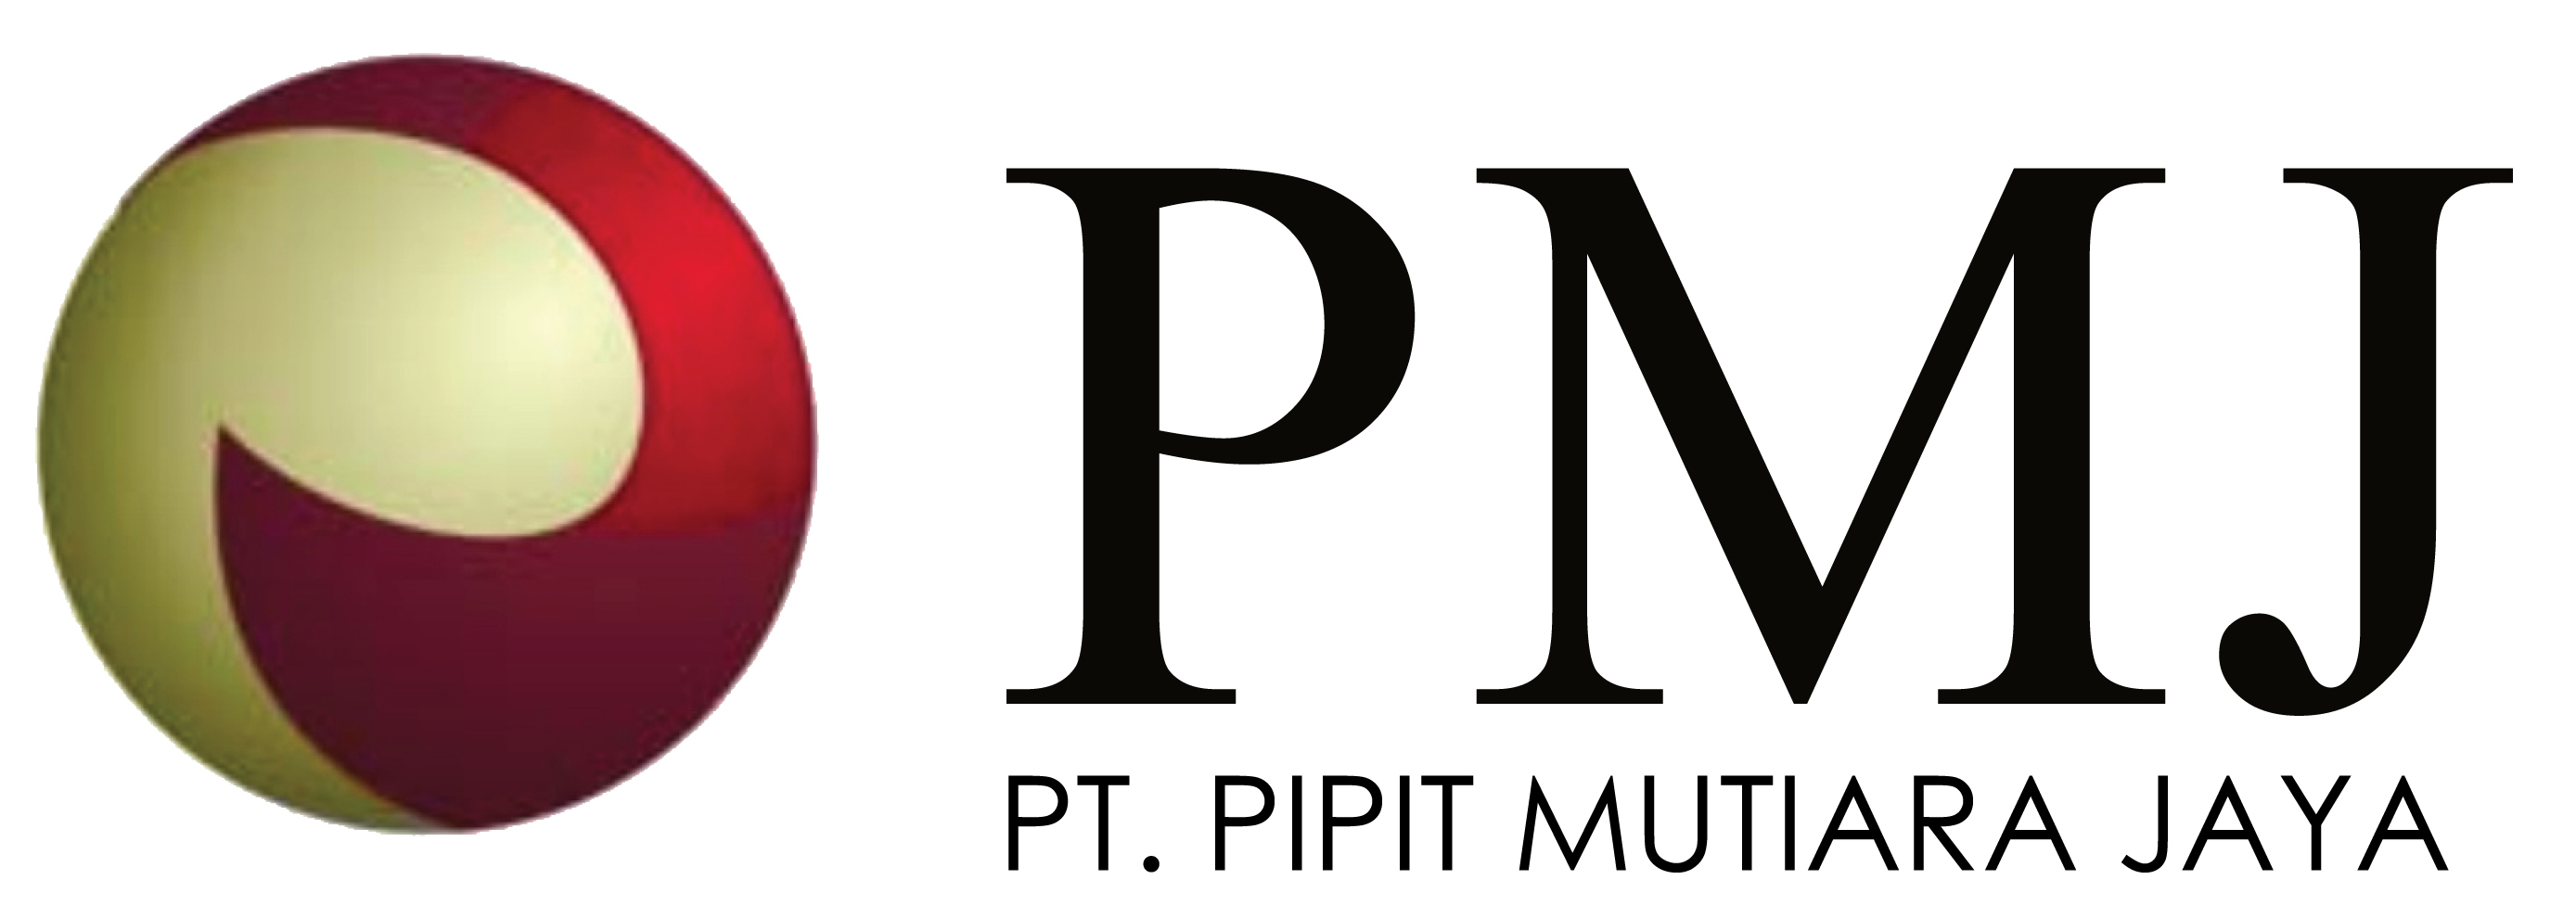 PT Pipit Mutiara Jaya